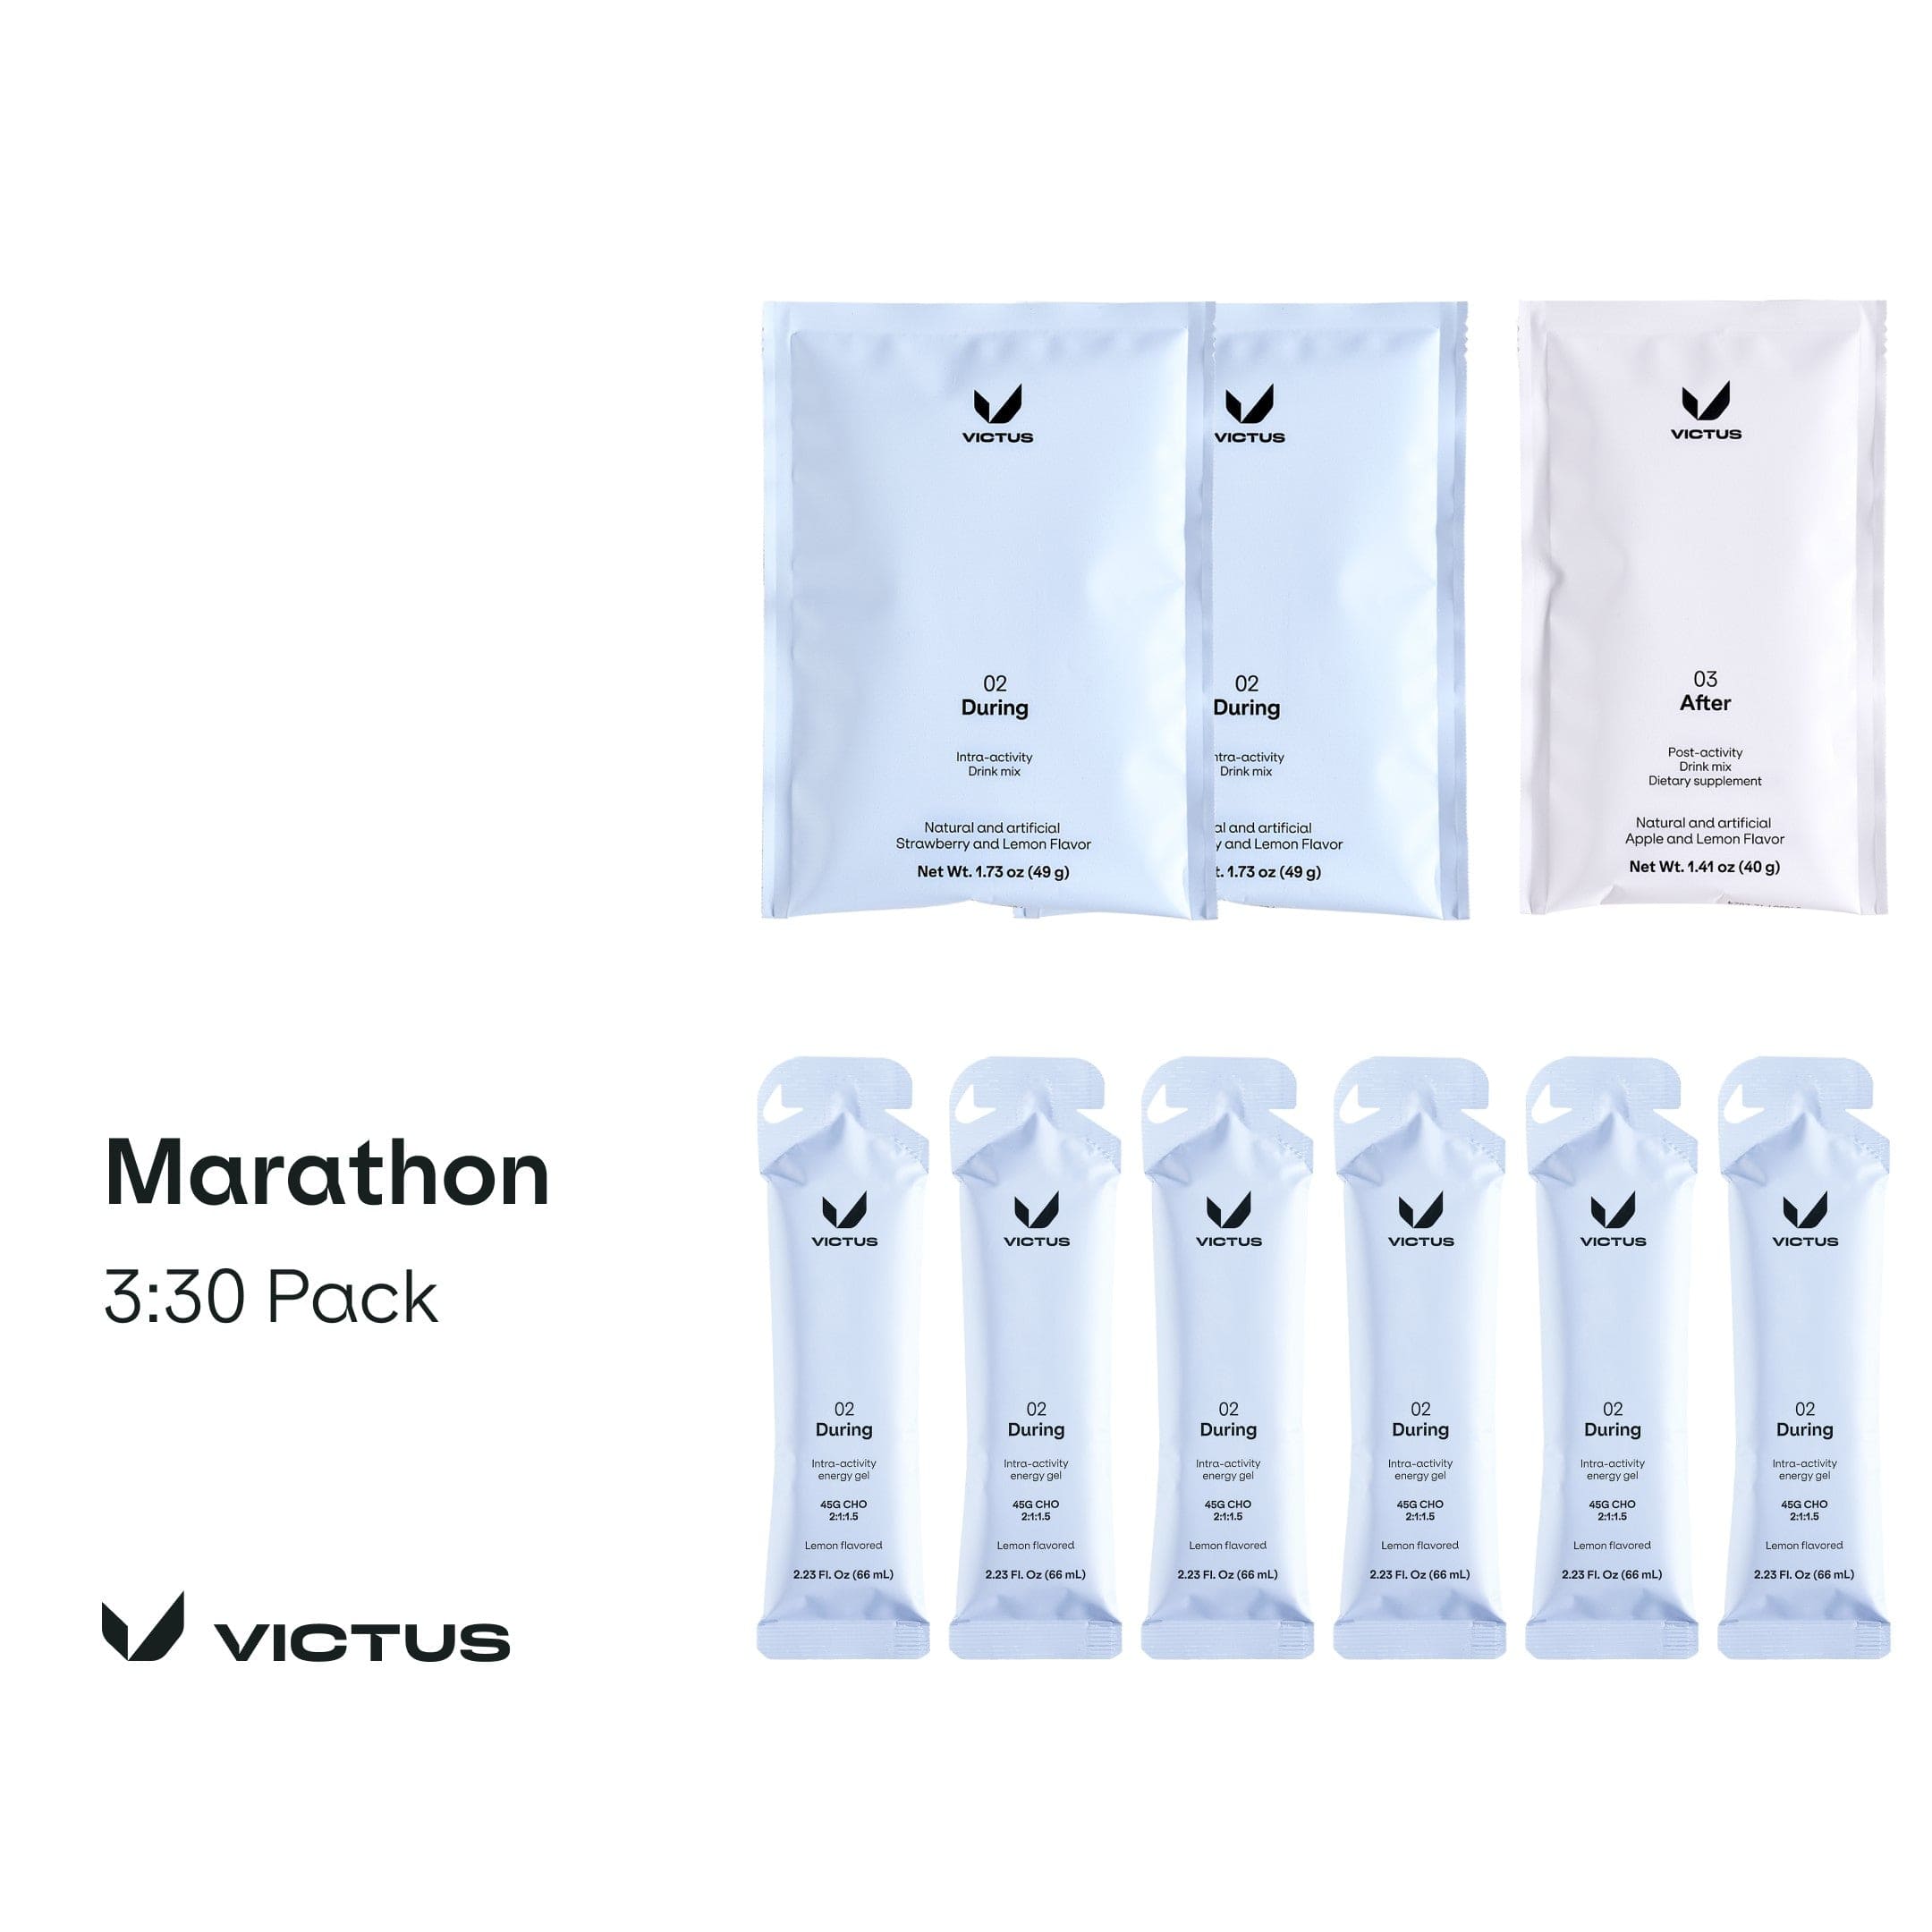 Victus Trial Pack 3:30 Pack Marathon Pack XMiles